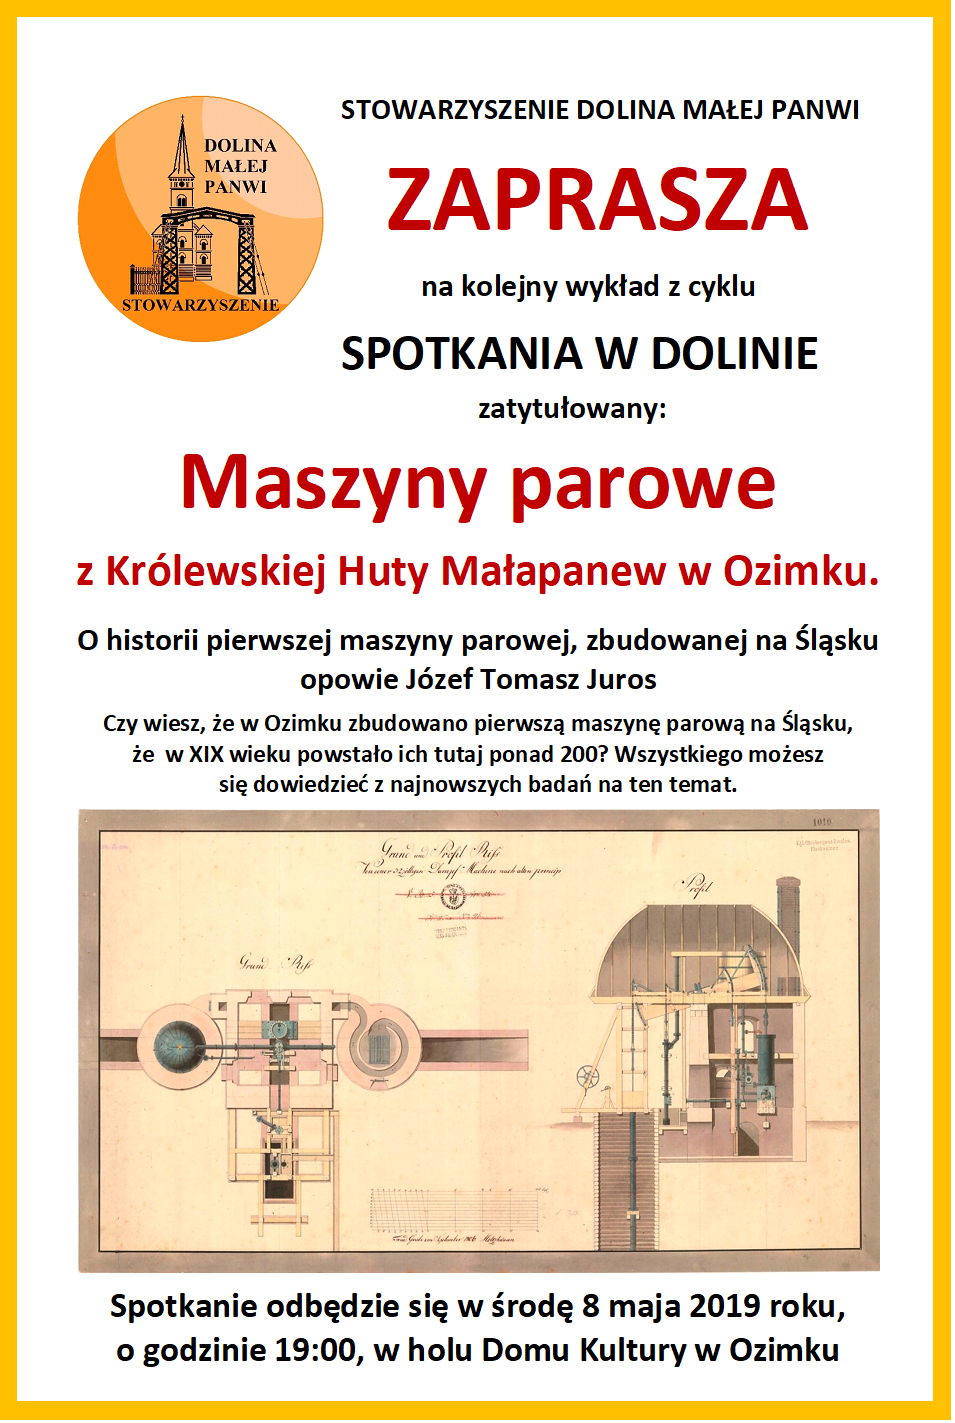 Historia pierwszej maszyny parowej na Śląsku